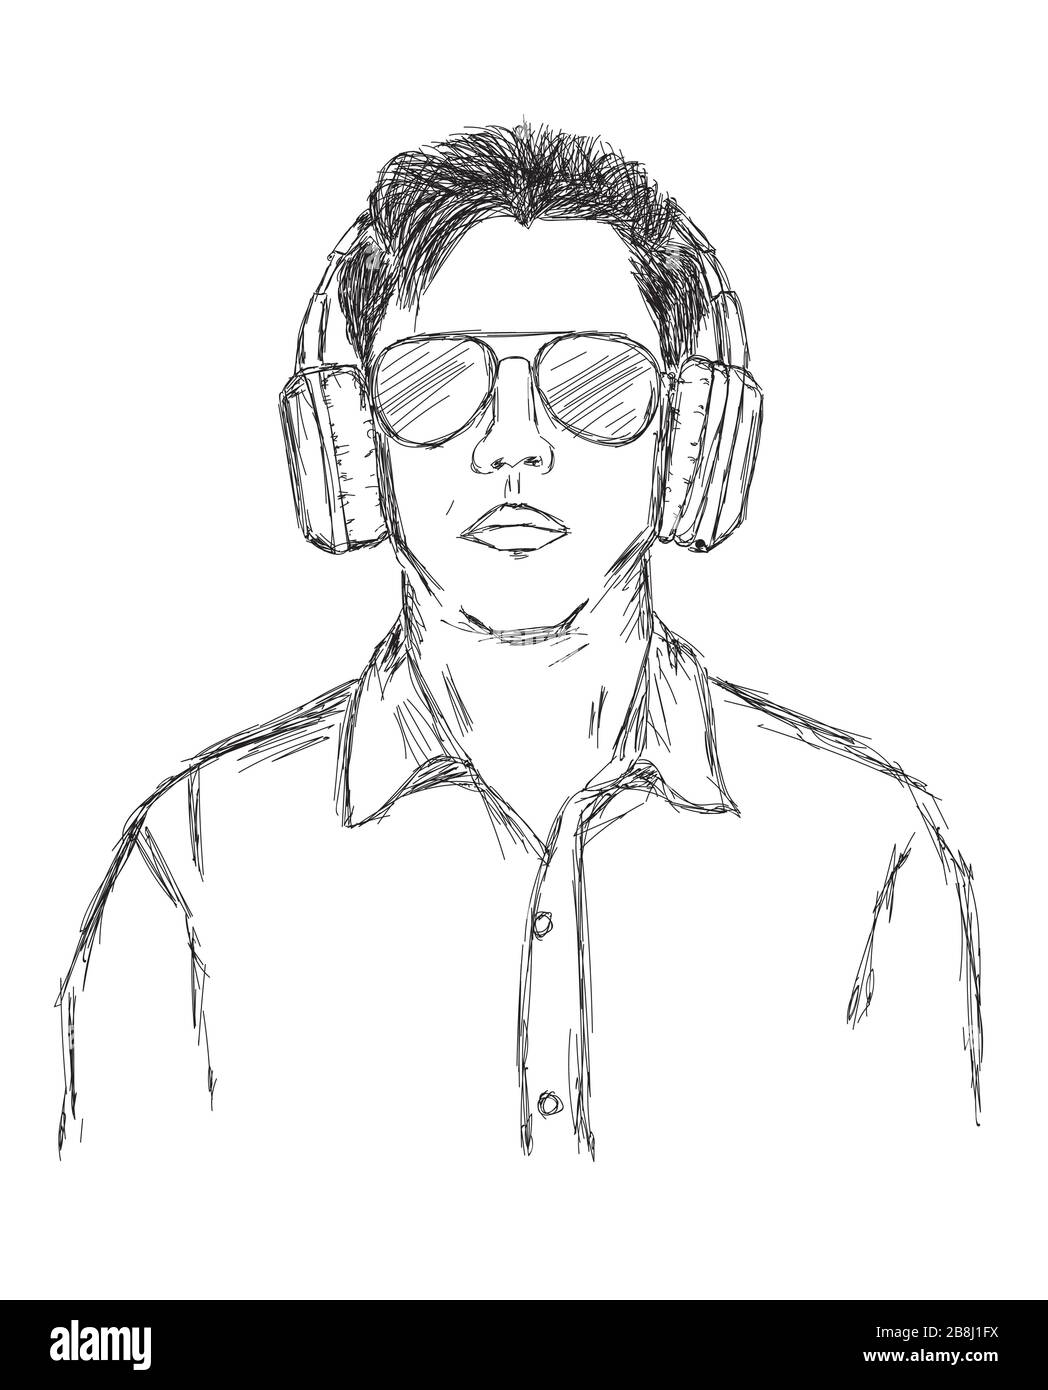 Vector Ilustración de un hombre con auriculares inalámbricos y gafas de sol Foto de stock